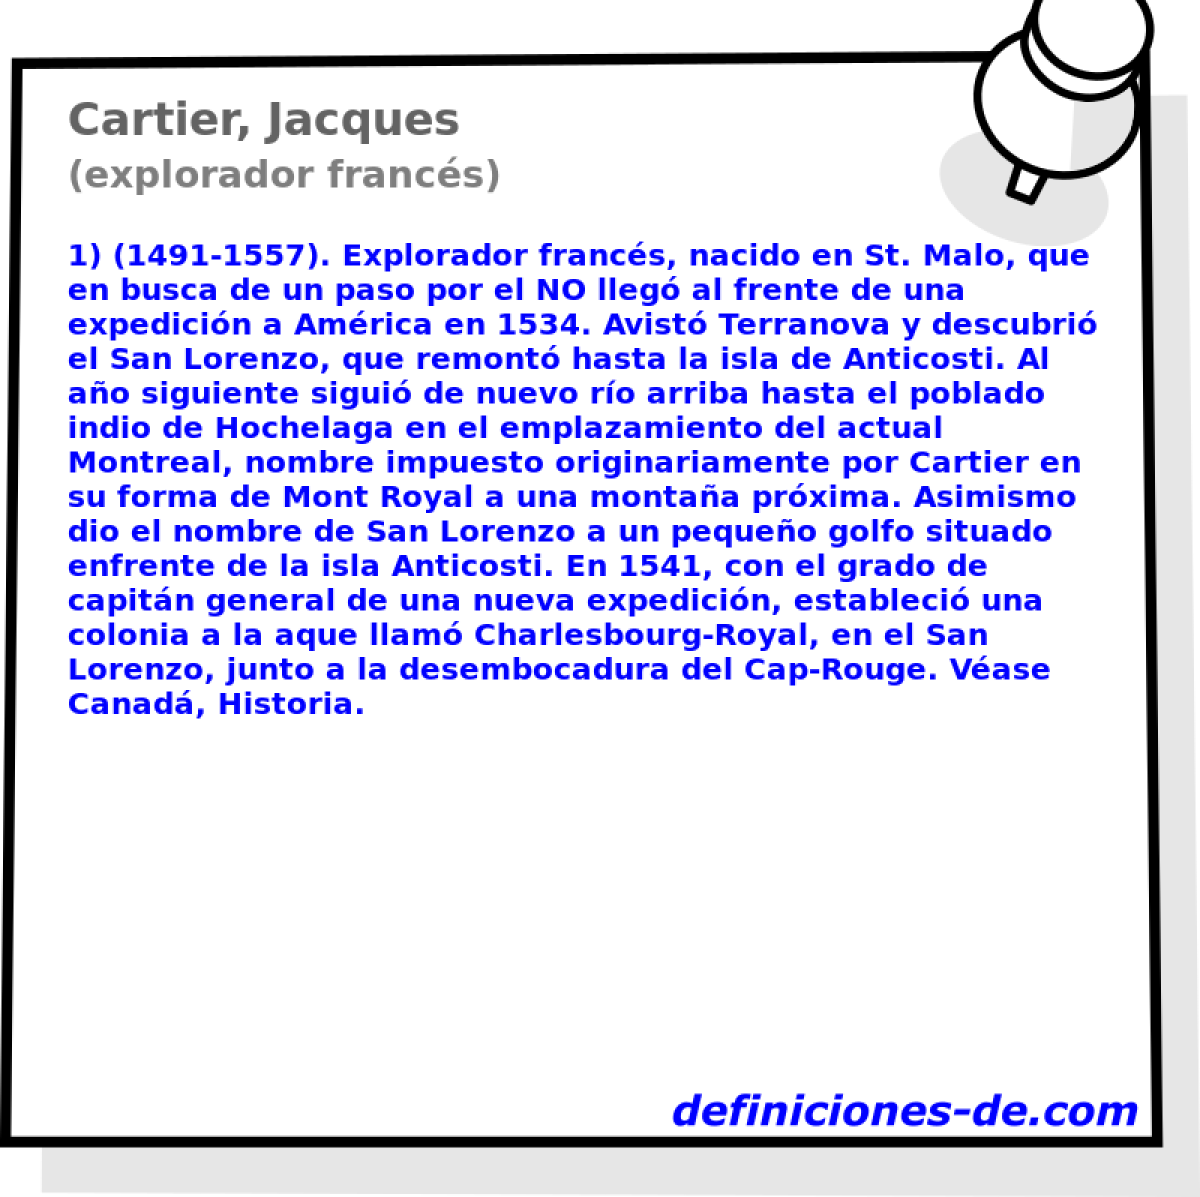 Cartier, Jacques (explorador francs)